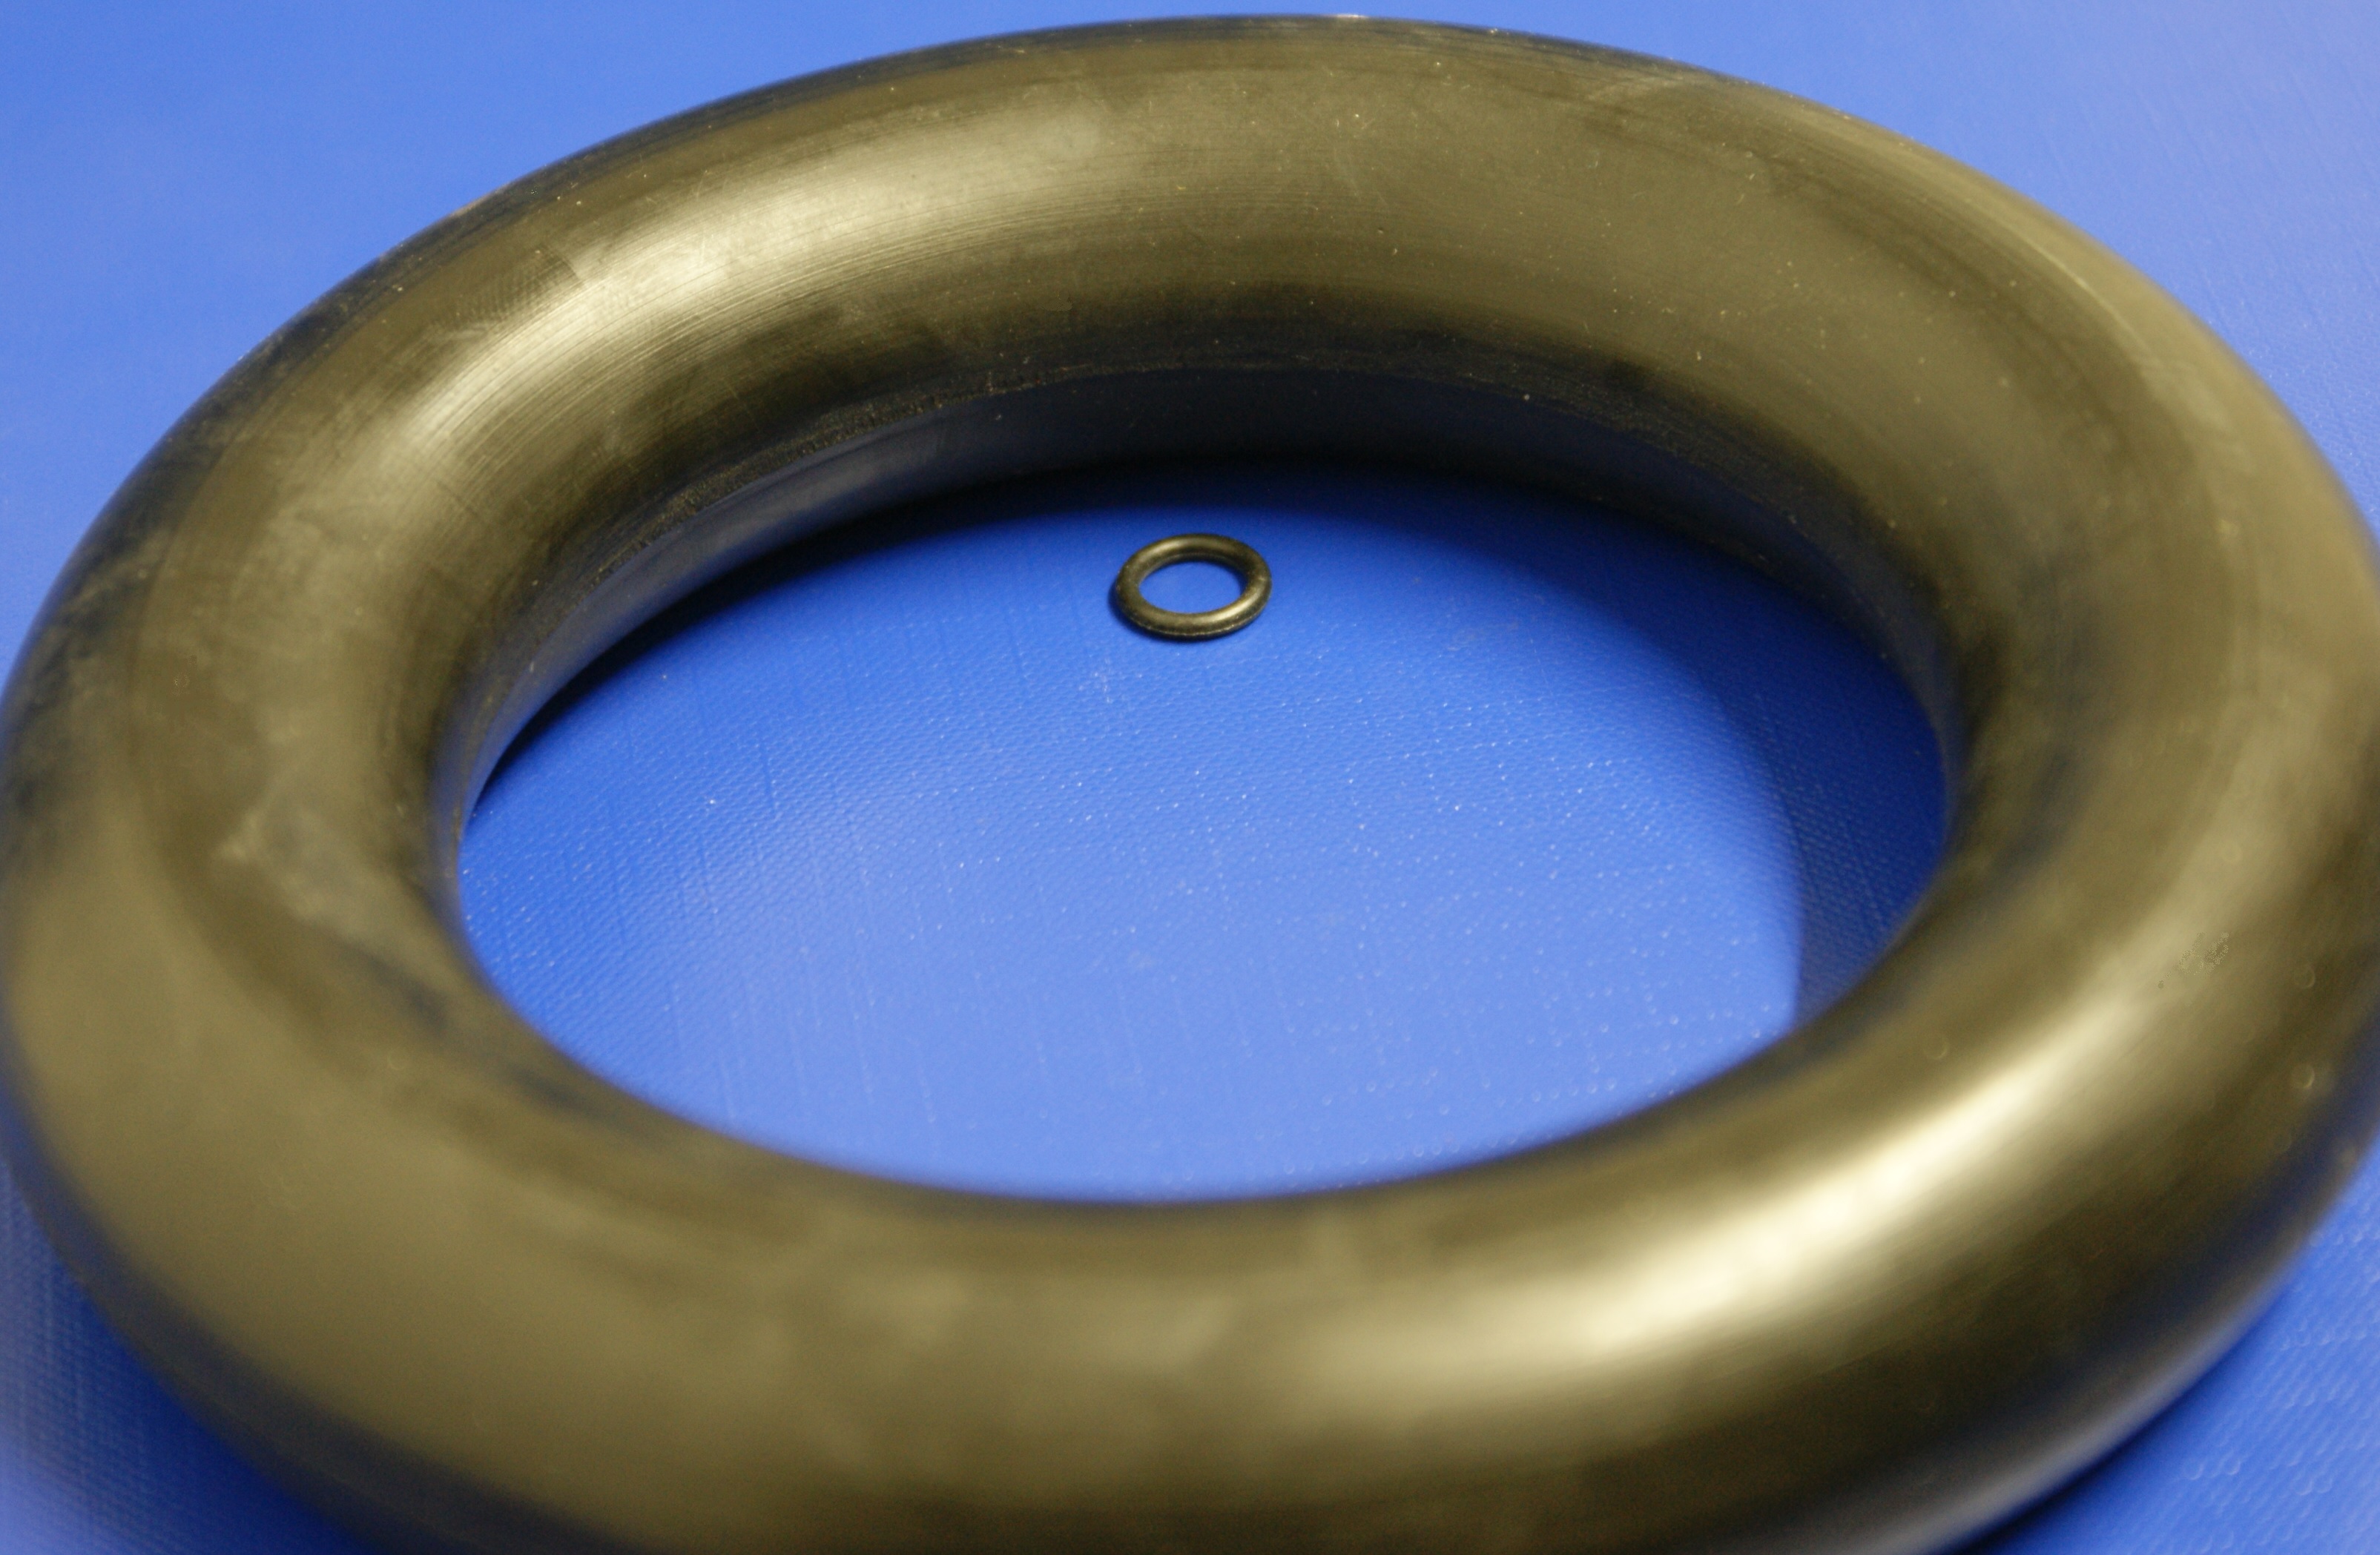 O-Ring Seal Manufacturers